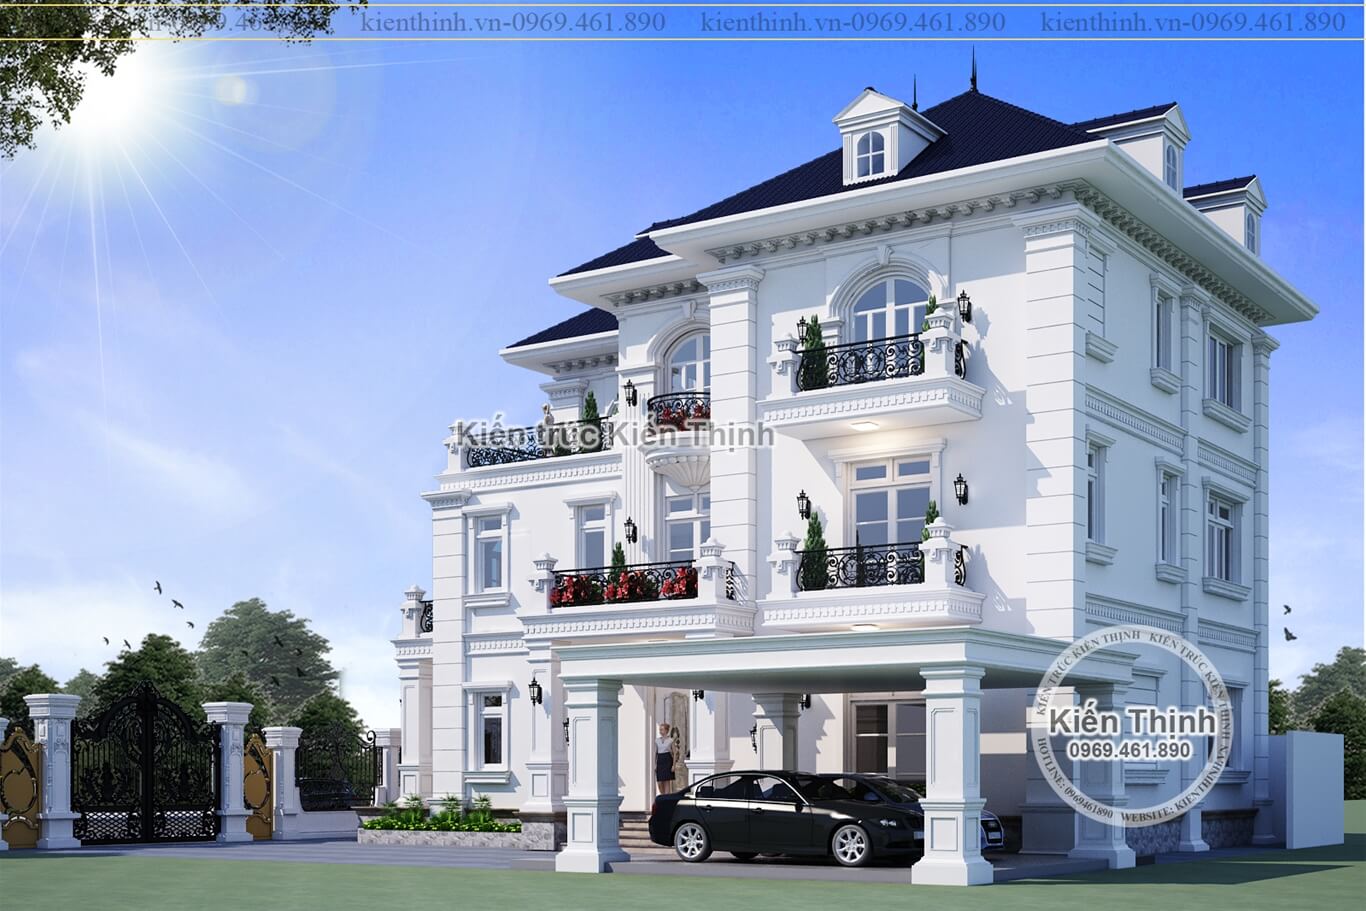 Mẫu thiết kế biệt thự 3 tầng đẹp được thiết kế theo phong cách Pháp - tân cổ điển châu Âu sang trọng - BT1917